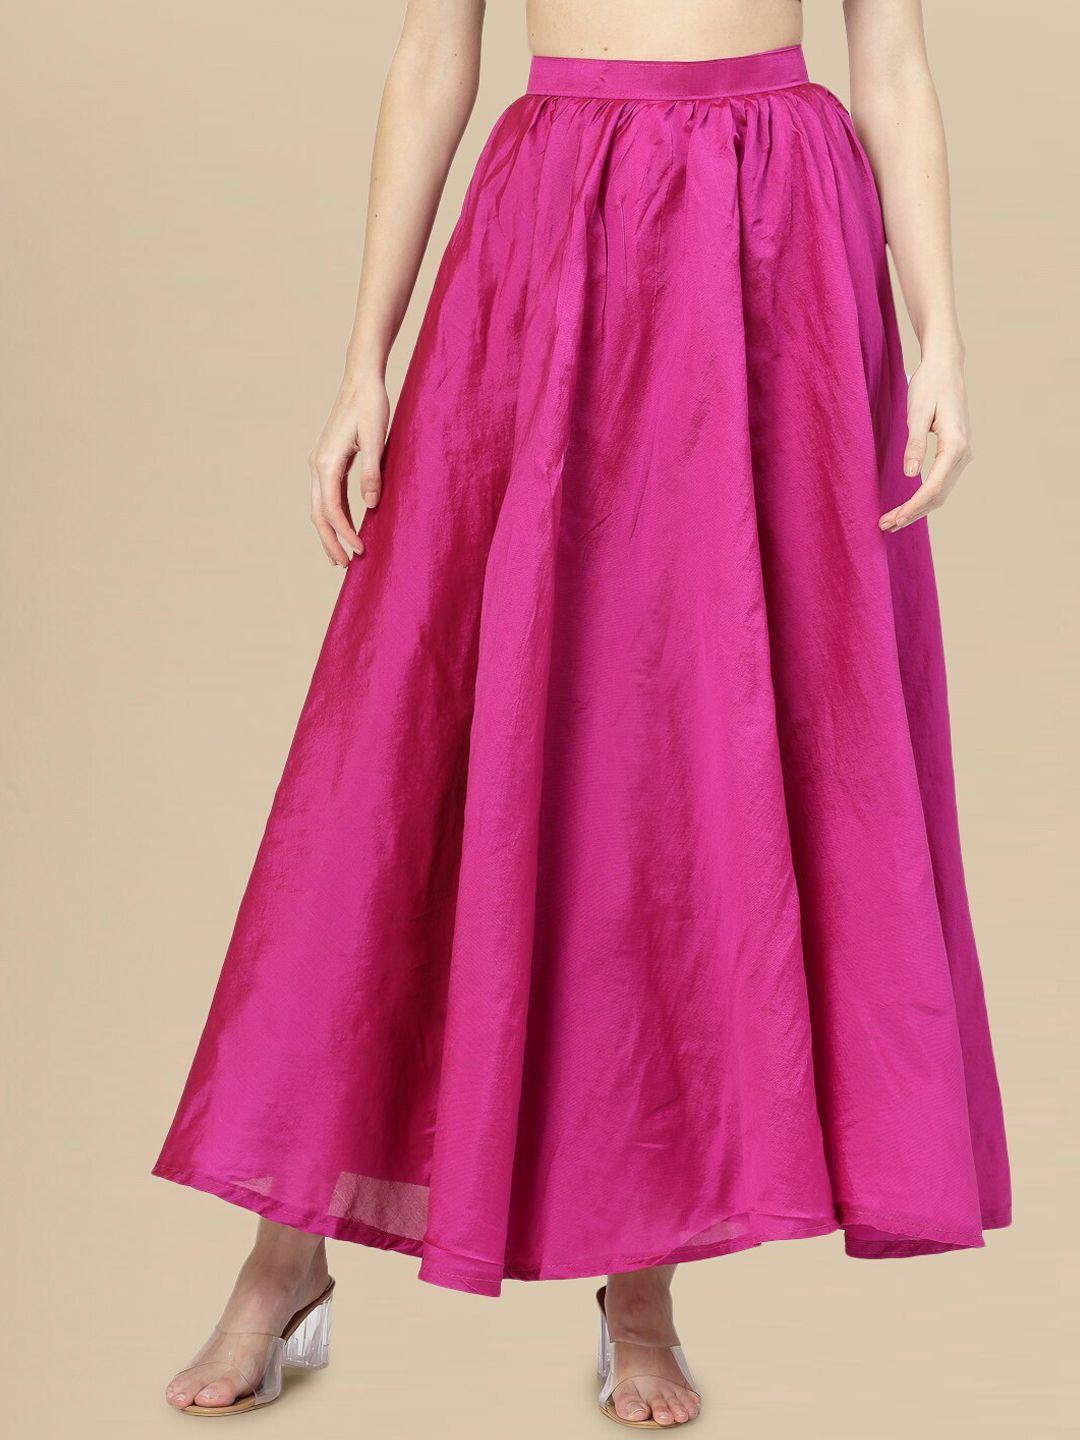 dressberry-ankle-length-flared-skirt